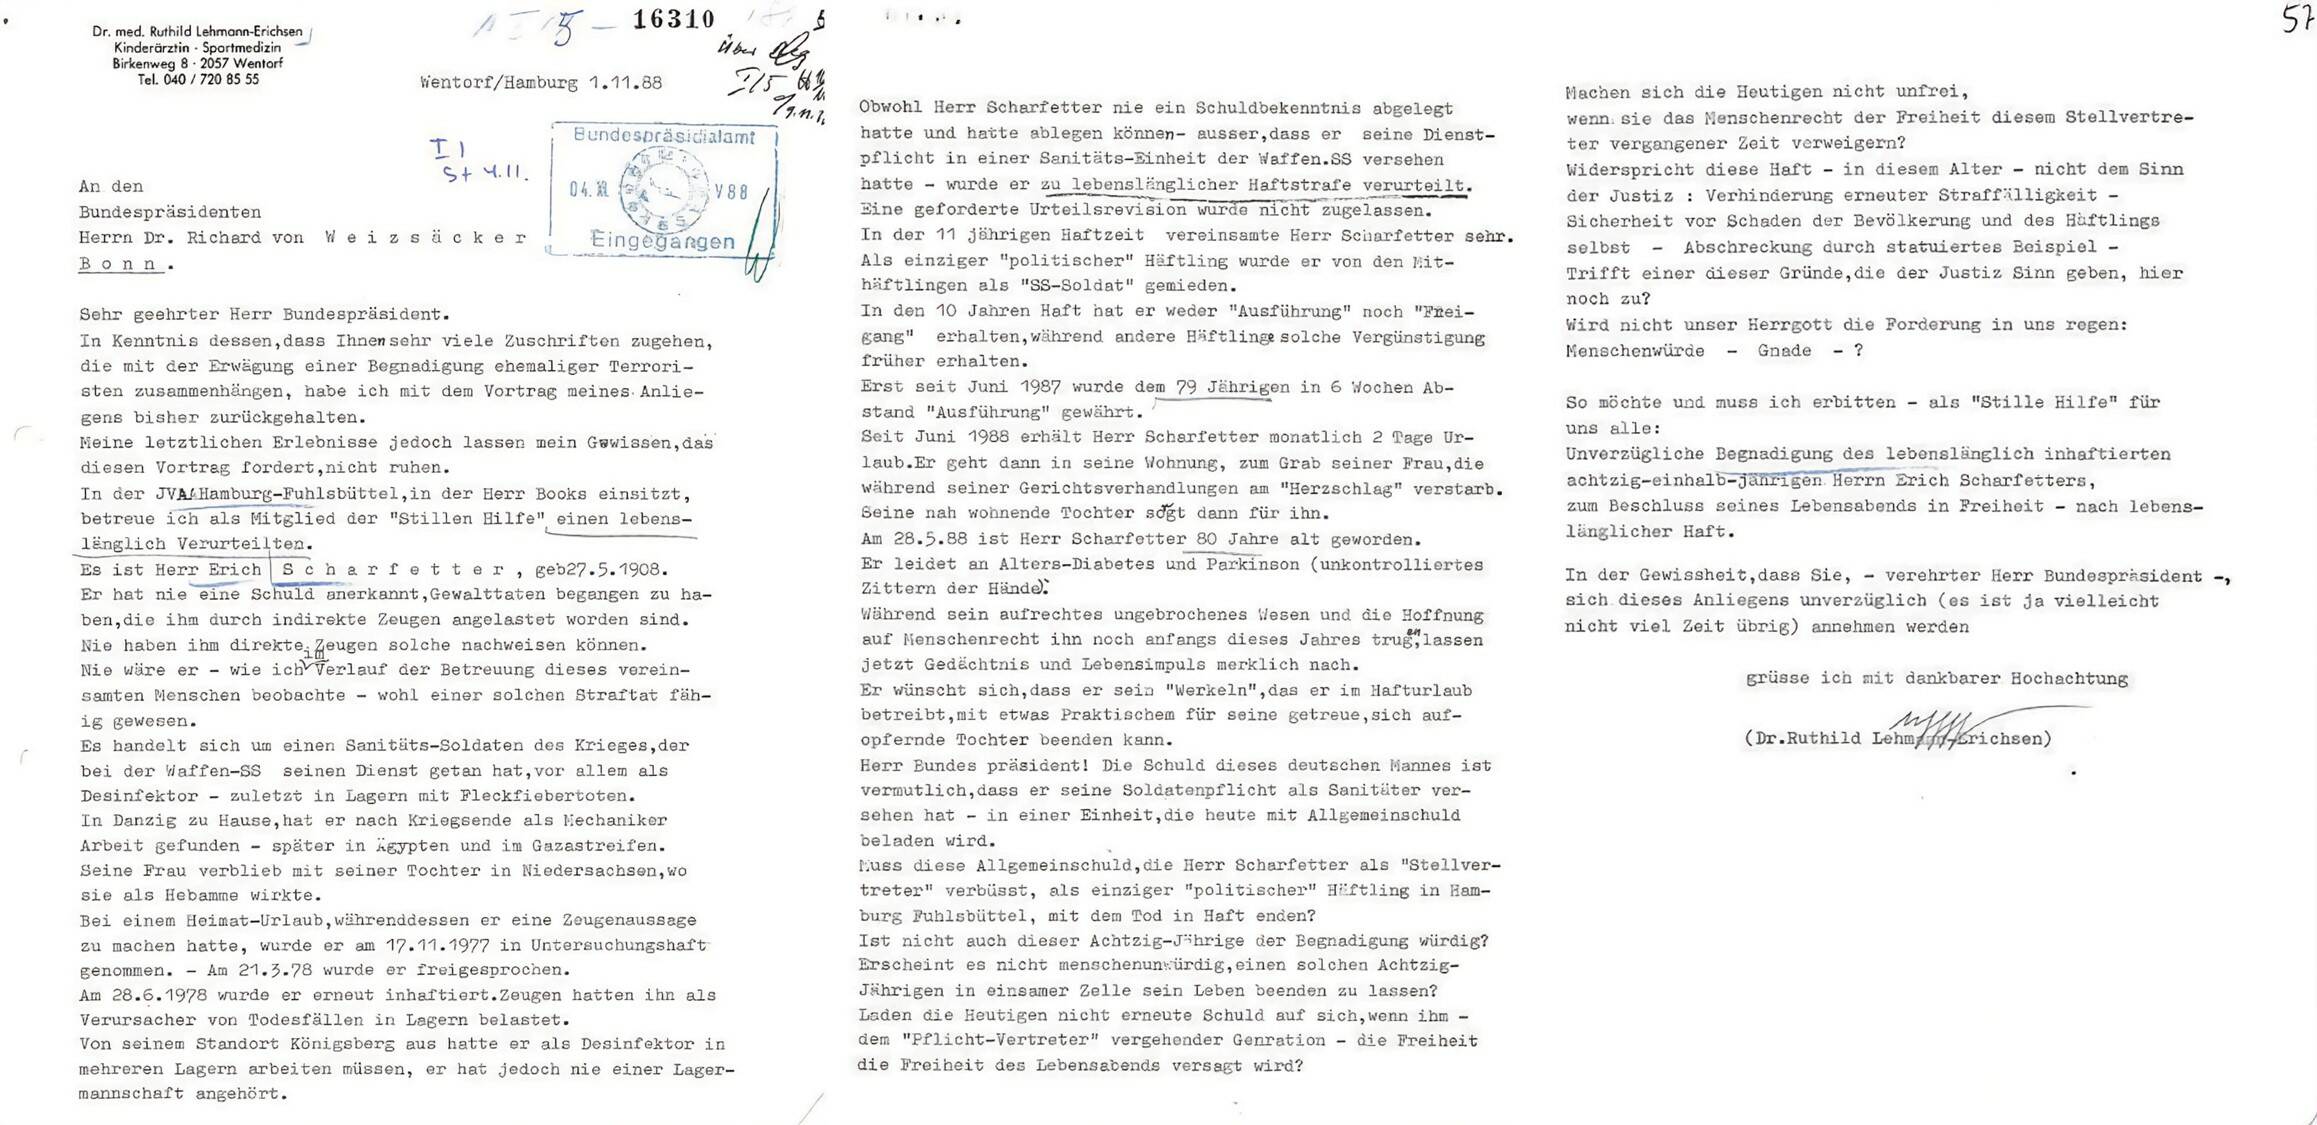 Прошение о помиловании от Рутхильд Леман-Эрихсен от 1.11.1988